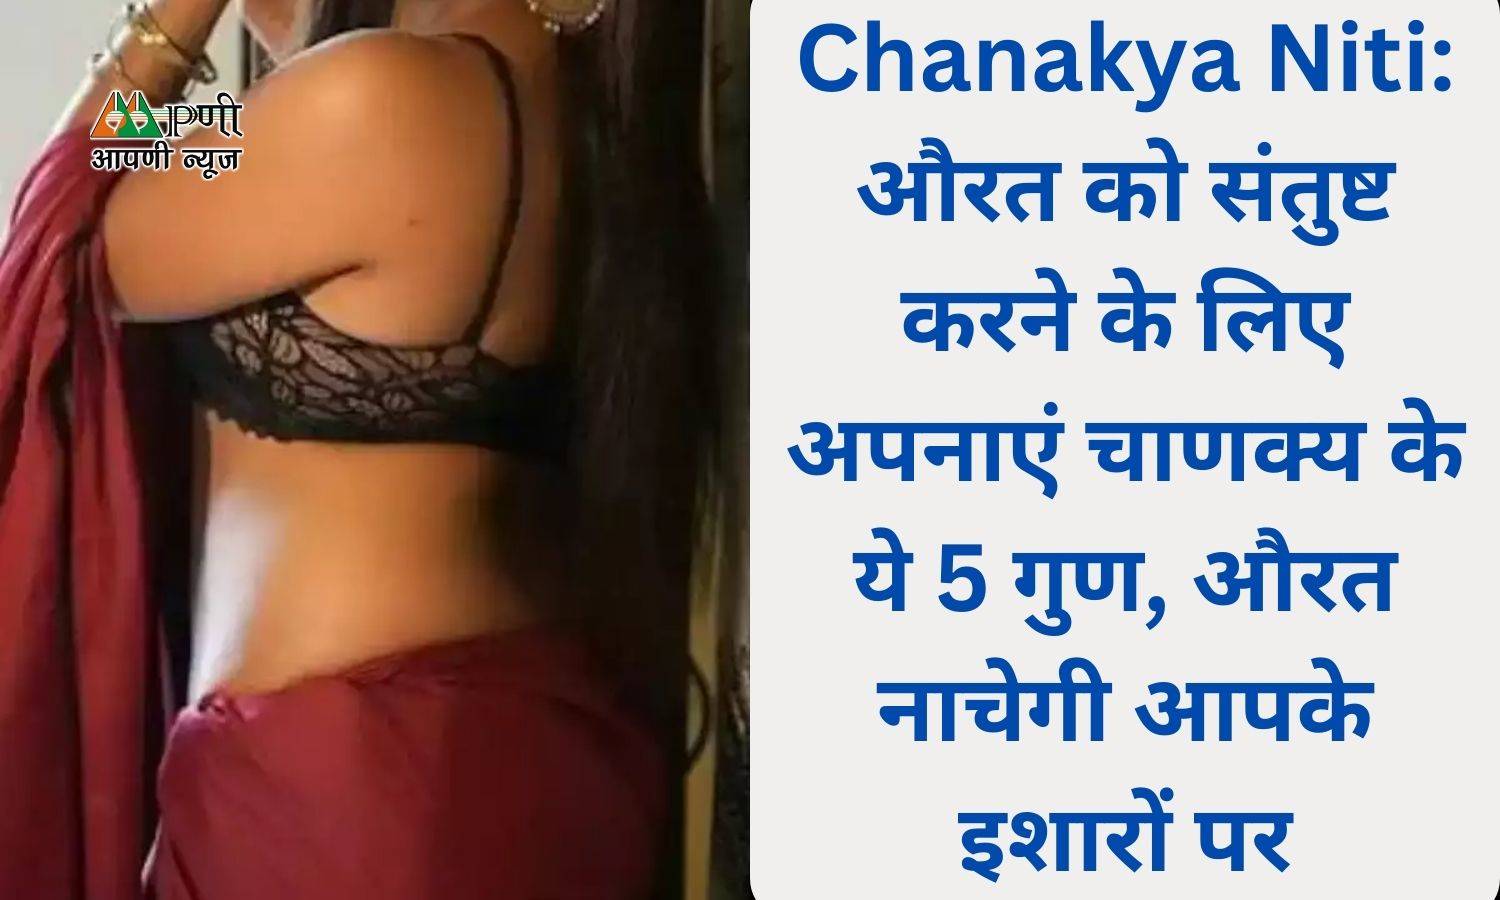 Chanakya Niti: औरत को संतुष्ट करने के लिए अपनाएं चाणक्य के ये 5 गुण, औरत नाचेगी आपके इशारों पर